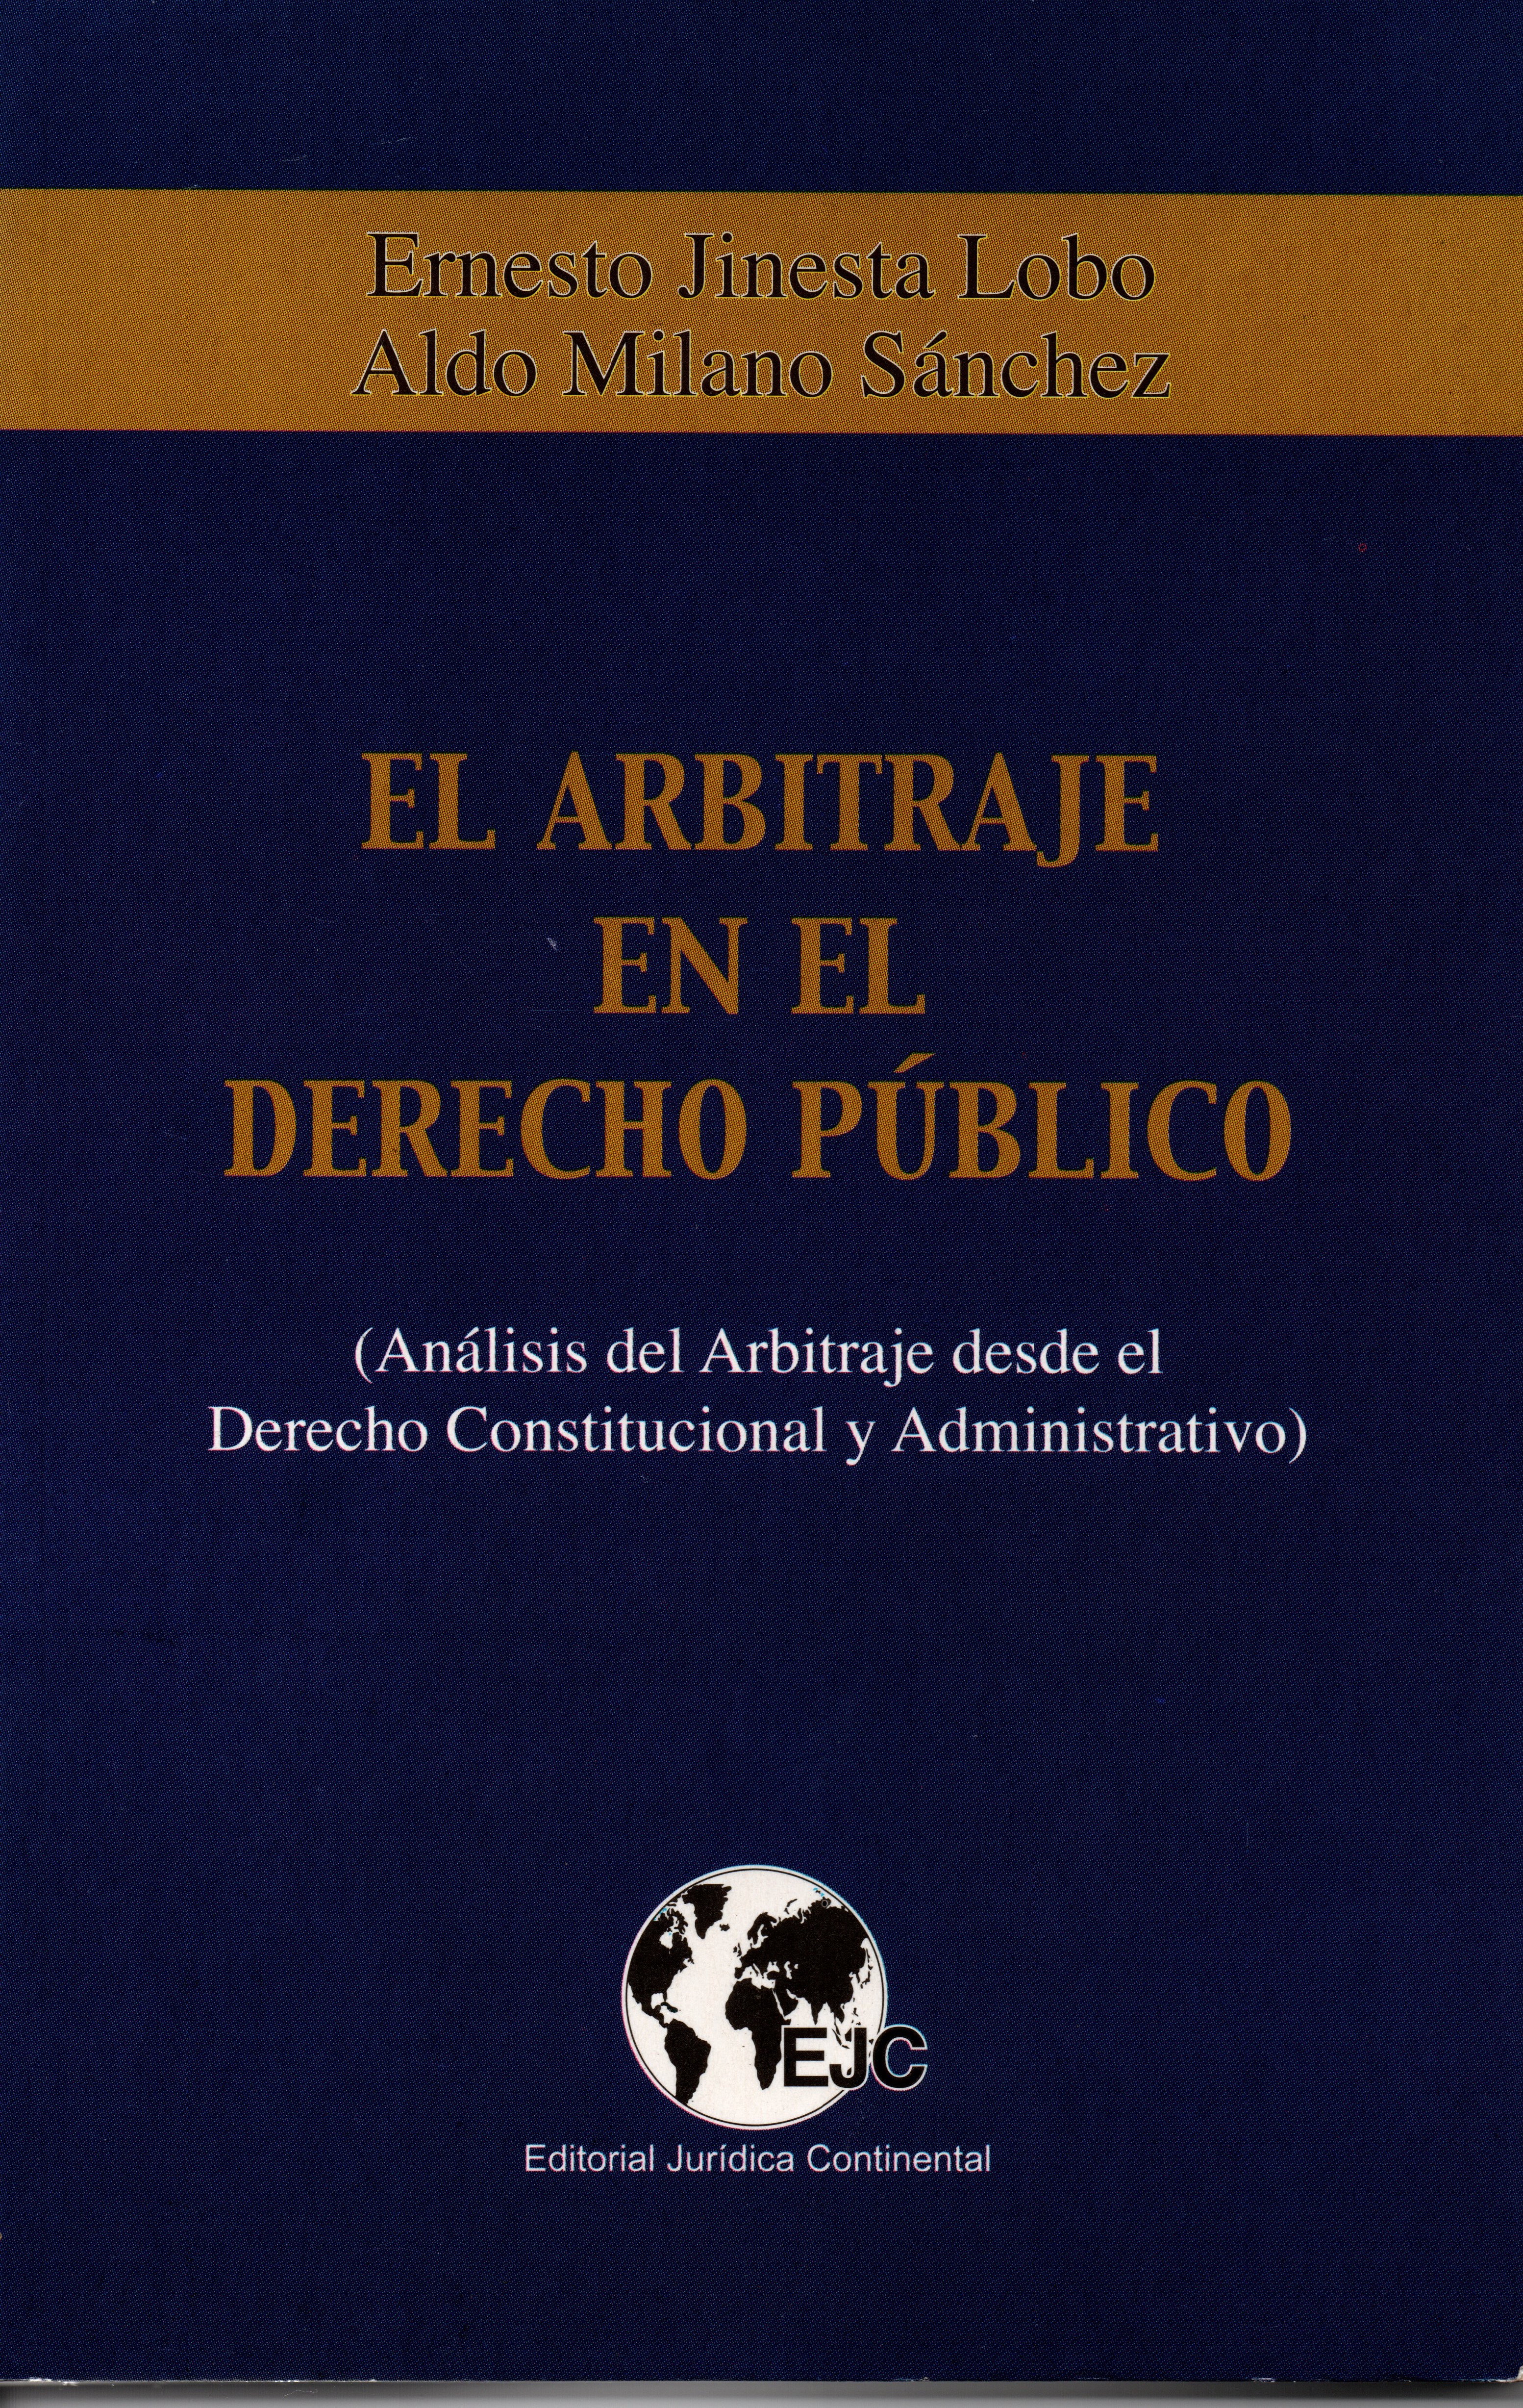 Arbitraje y Derecho Público